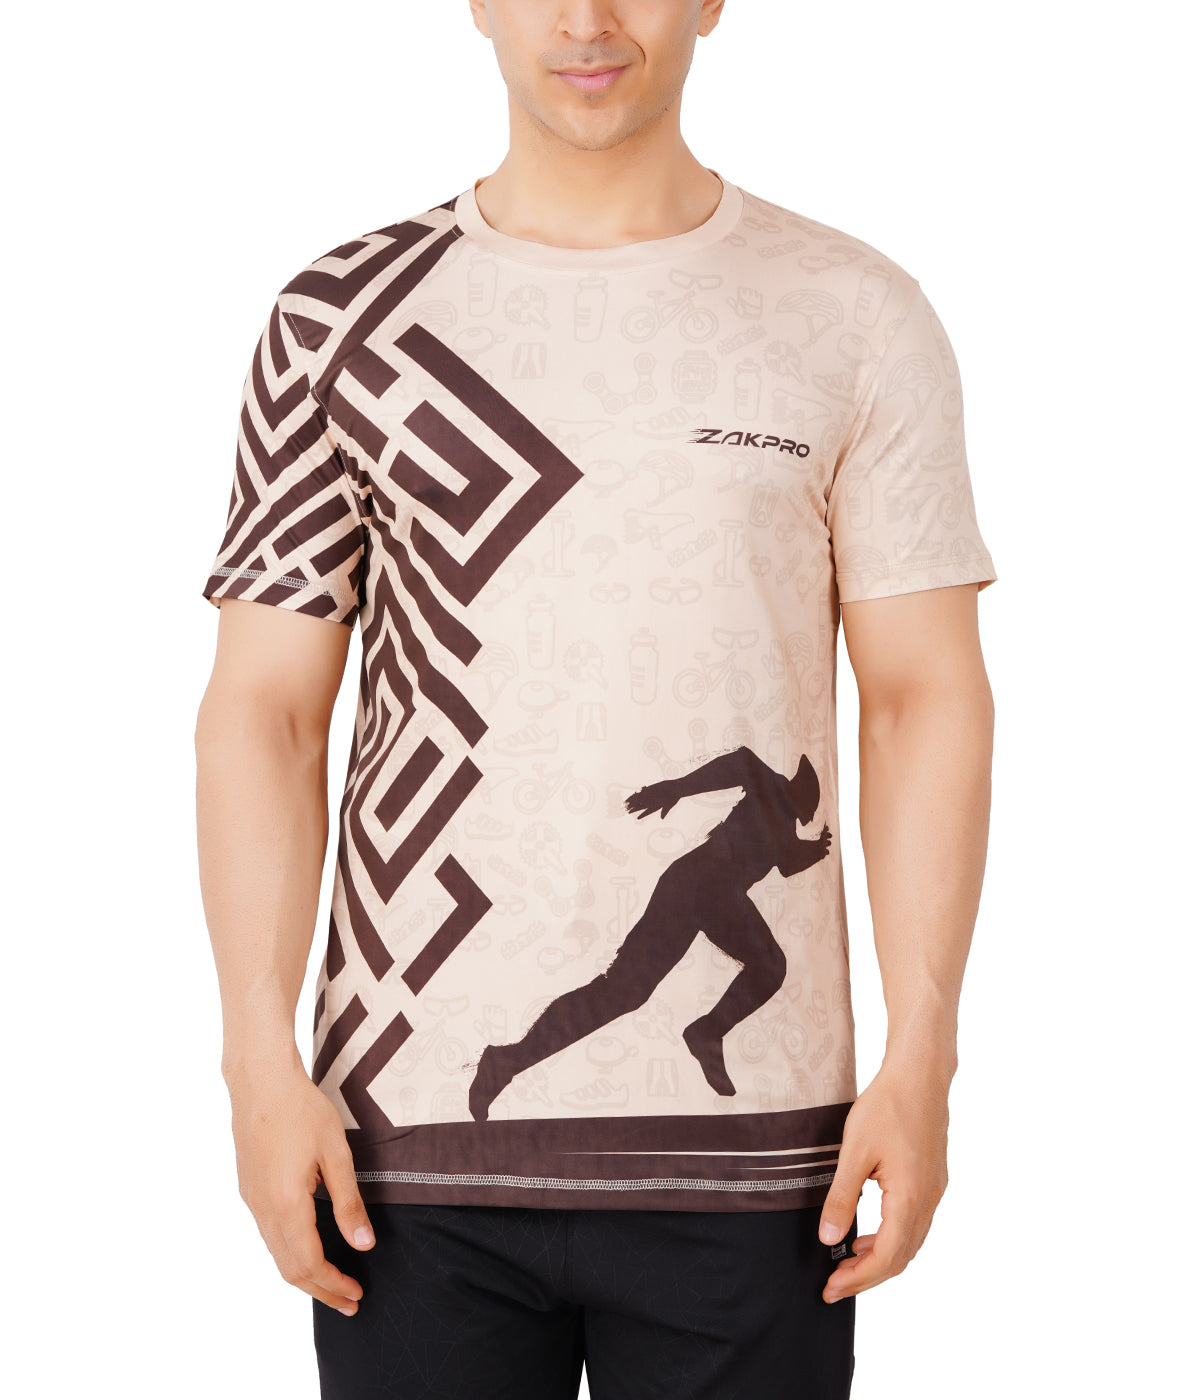 Zakpro Sports Men's Cycling T-Shirt (Maze Run)